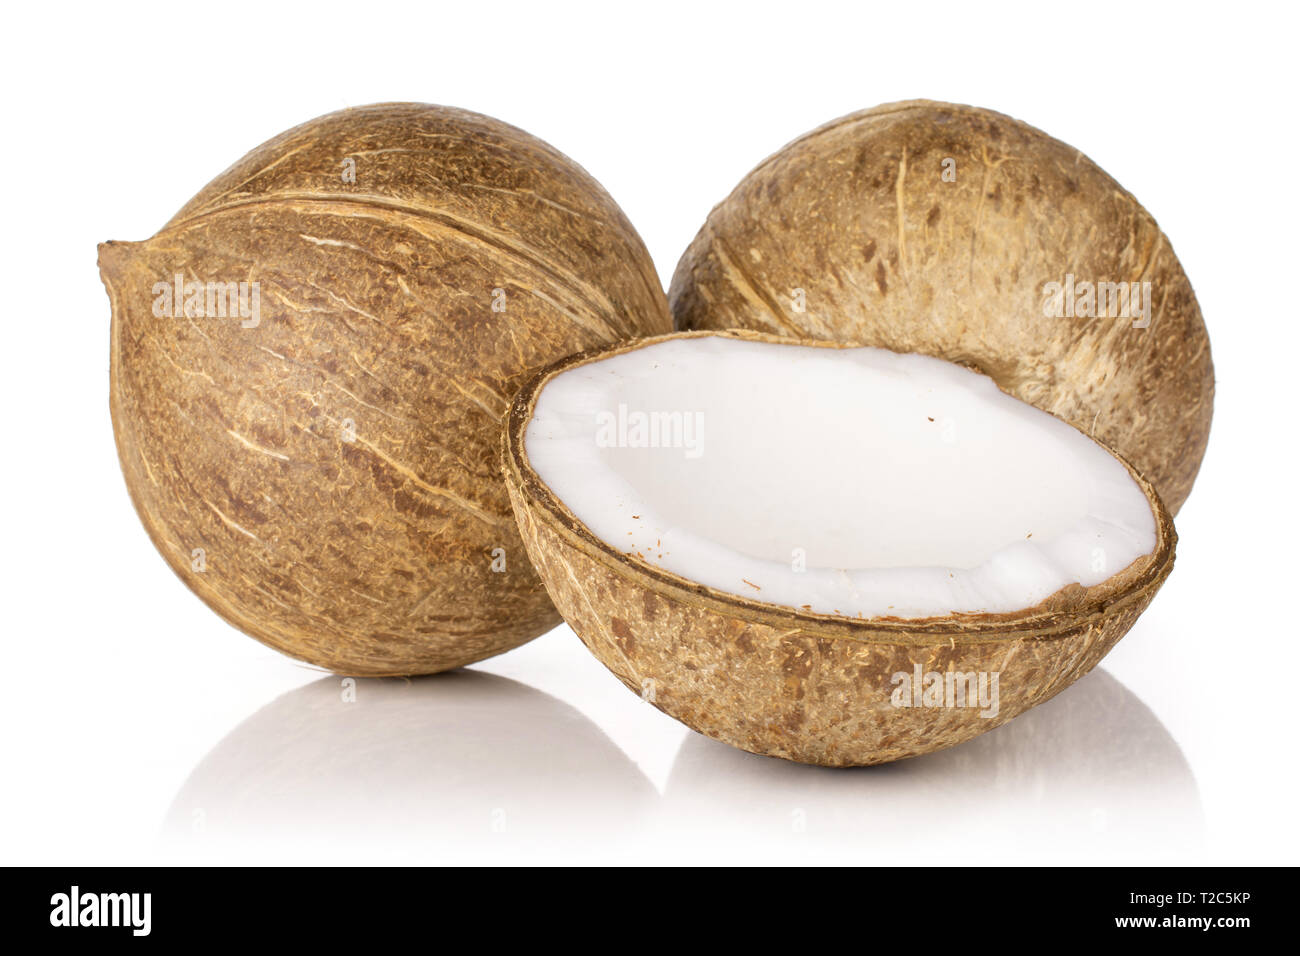 Grupo de dos toda la mitad de dulce de coco bio aislado sobre fondo blanco. Foto de stock